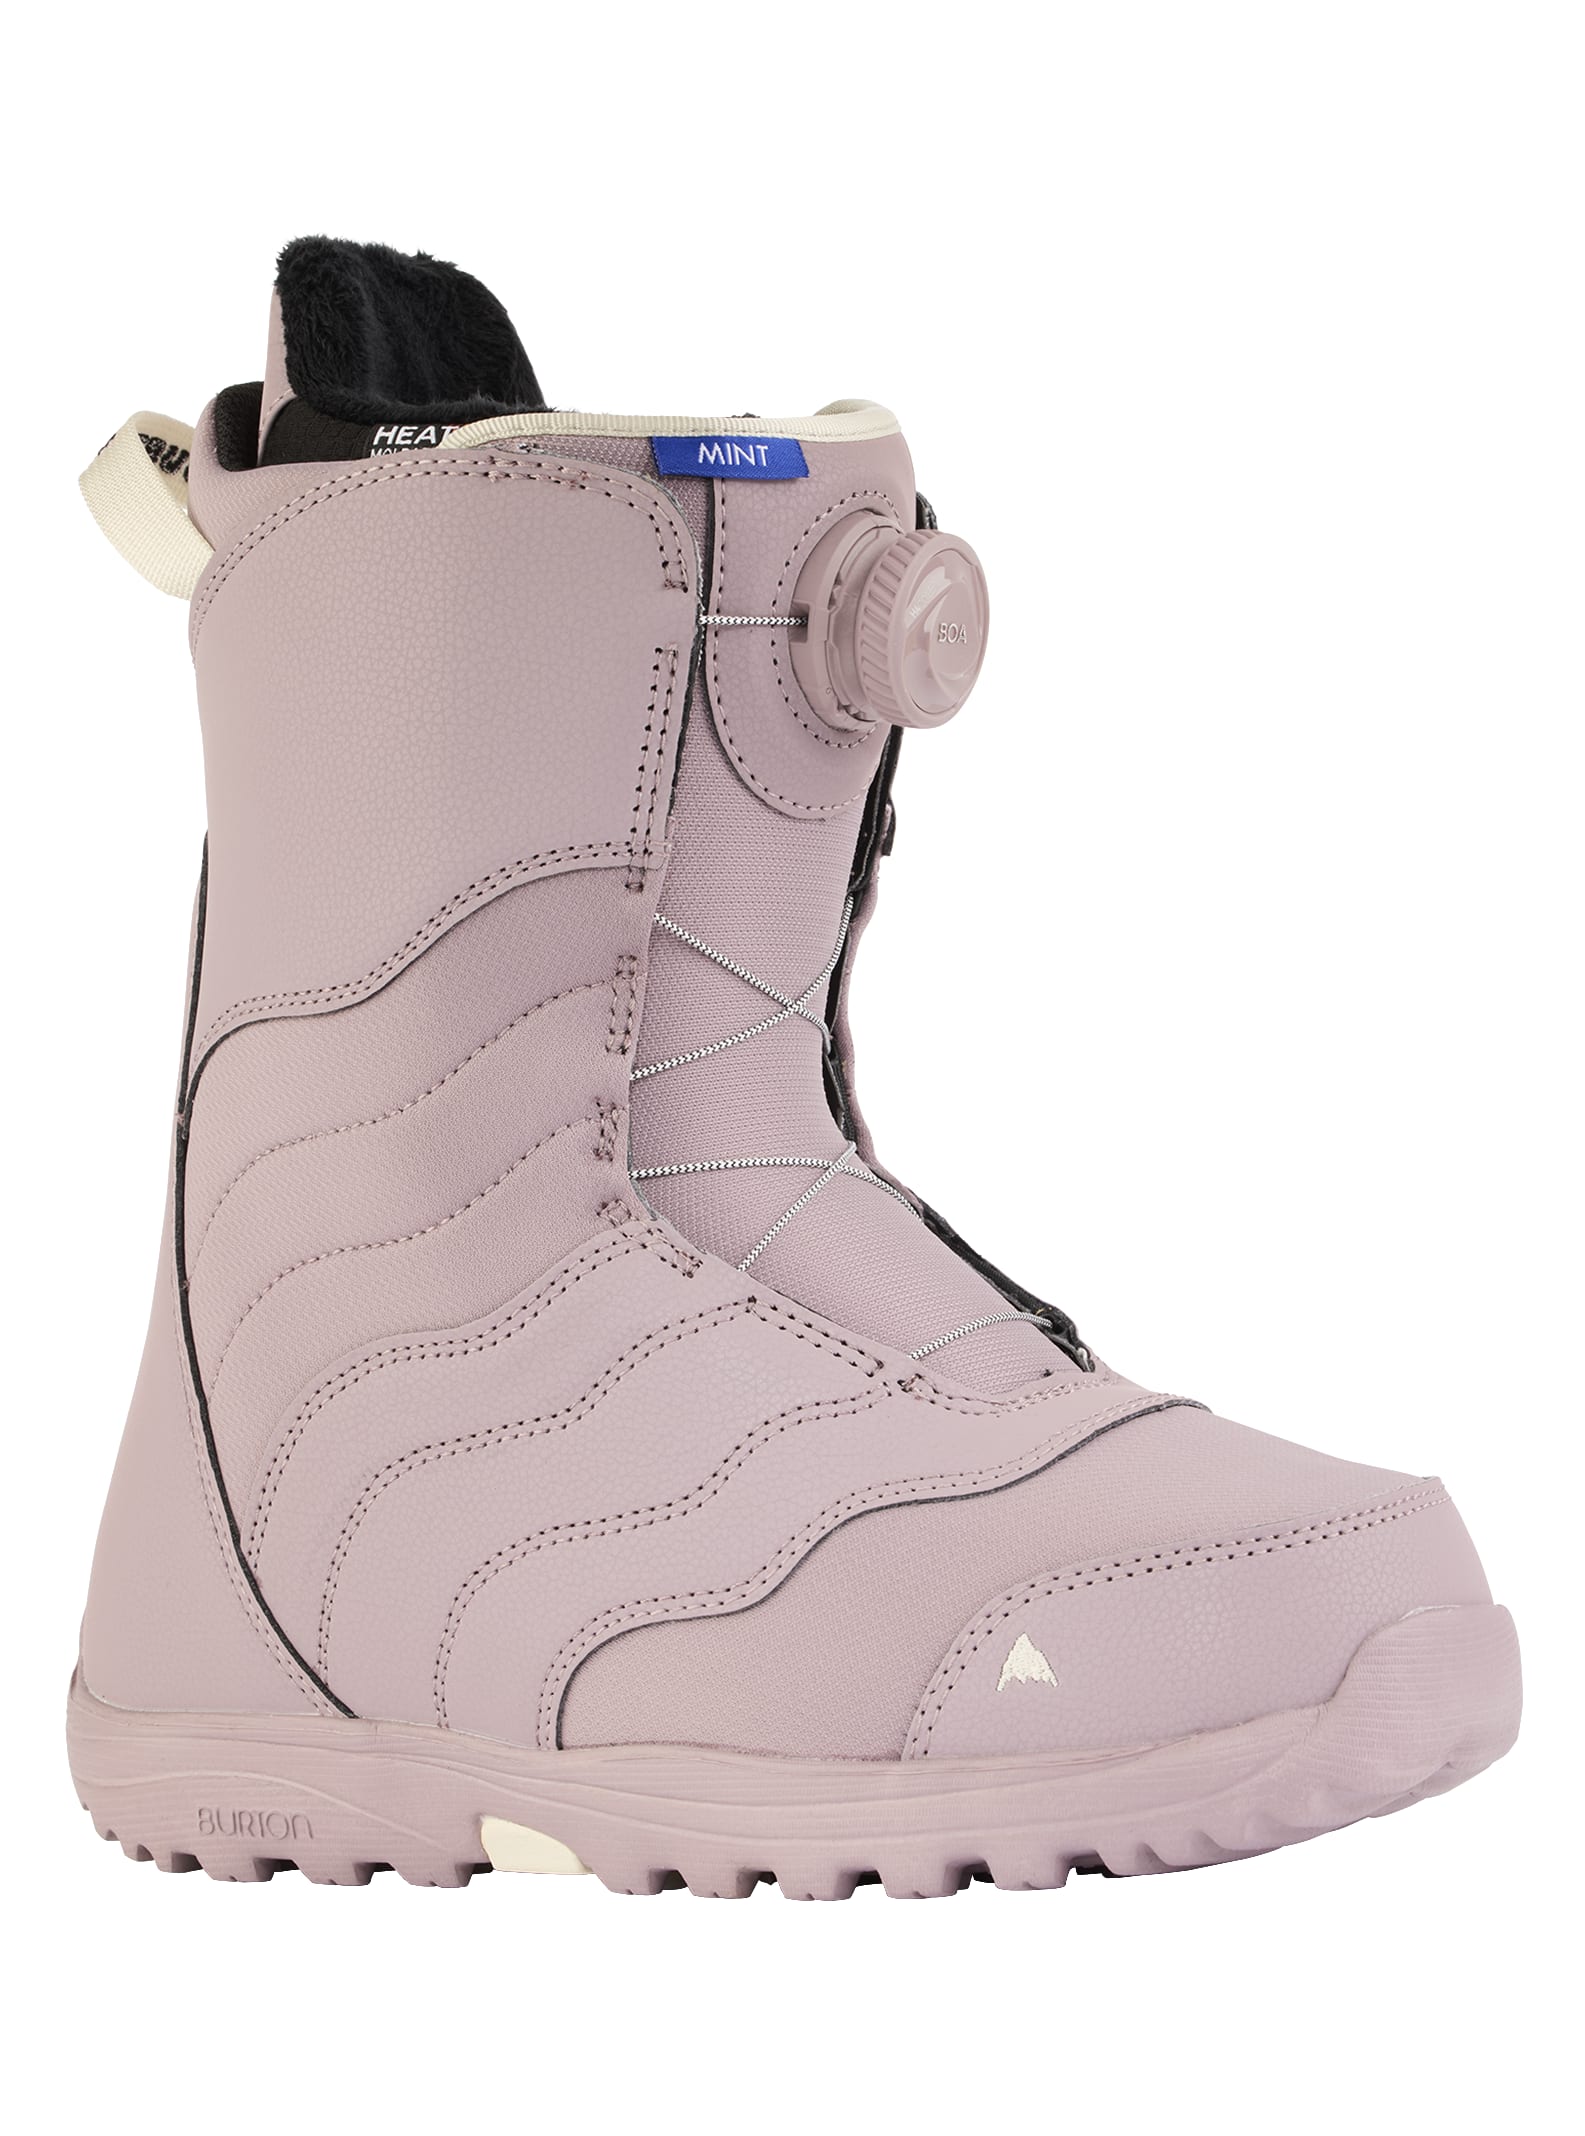 ladies boa snow board boots easy Boa SnowBoard Boots Size 11 White/Gray New 